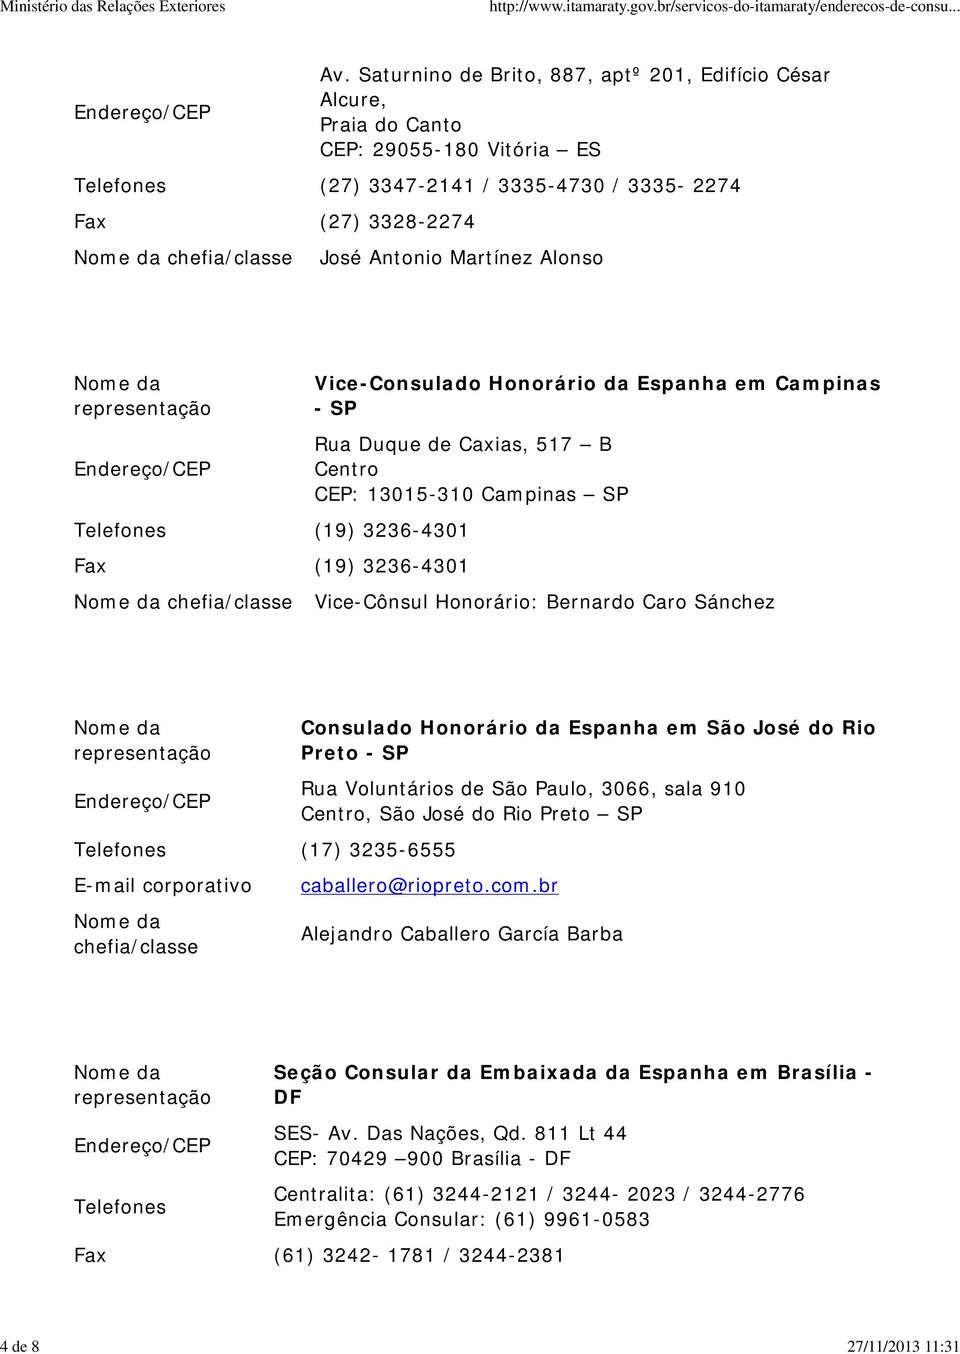 Telefones (19) 3236-4301 Fax (19) 3236-4301 Vice-Consulado Honorário da Espanha em Campinas - SP Rua Duque de Caxias, 517 B Centro CEP: 13015-310 Campinas SP Vice-Cônsul Honorário: Bernardo Caro